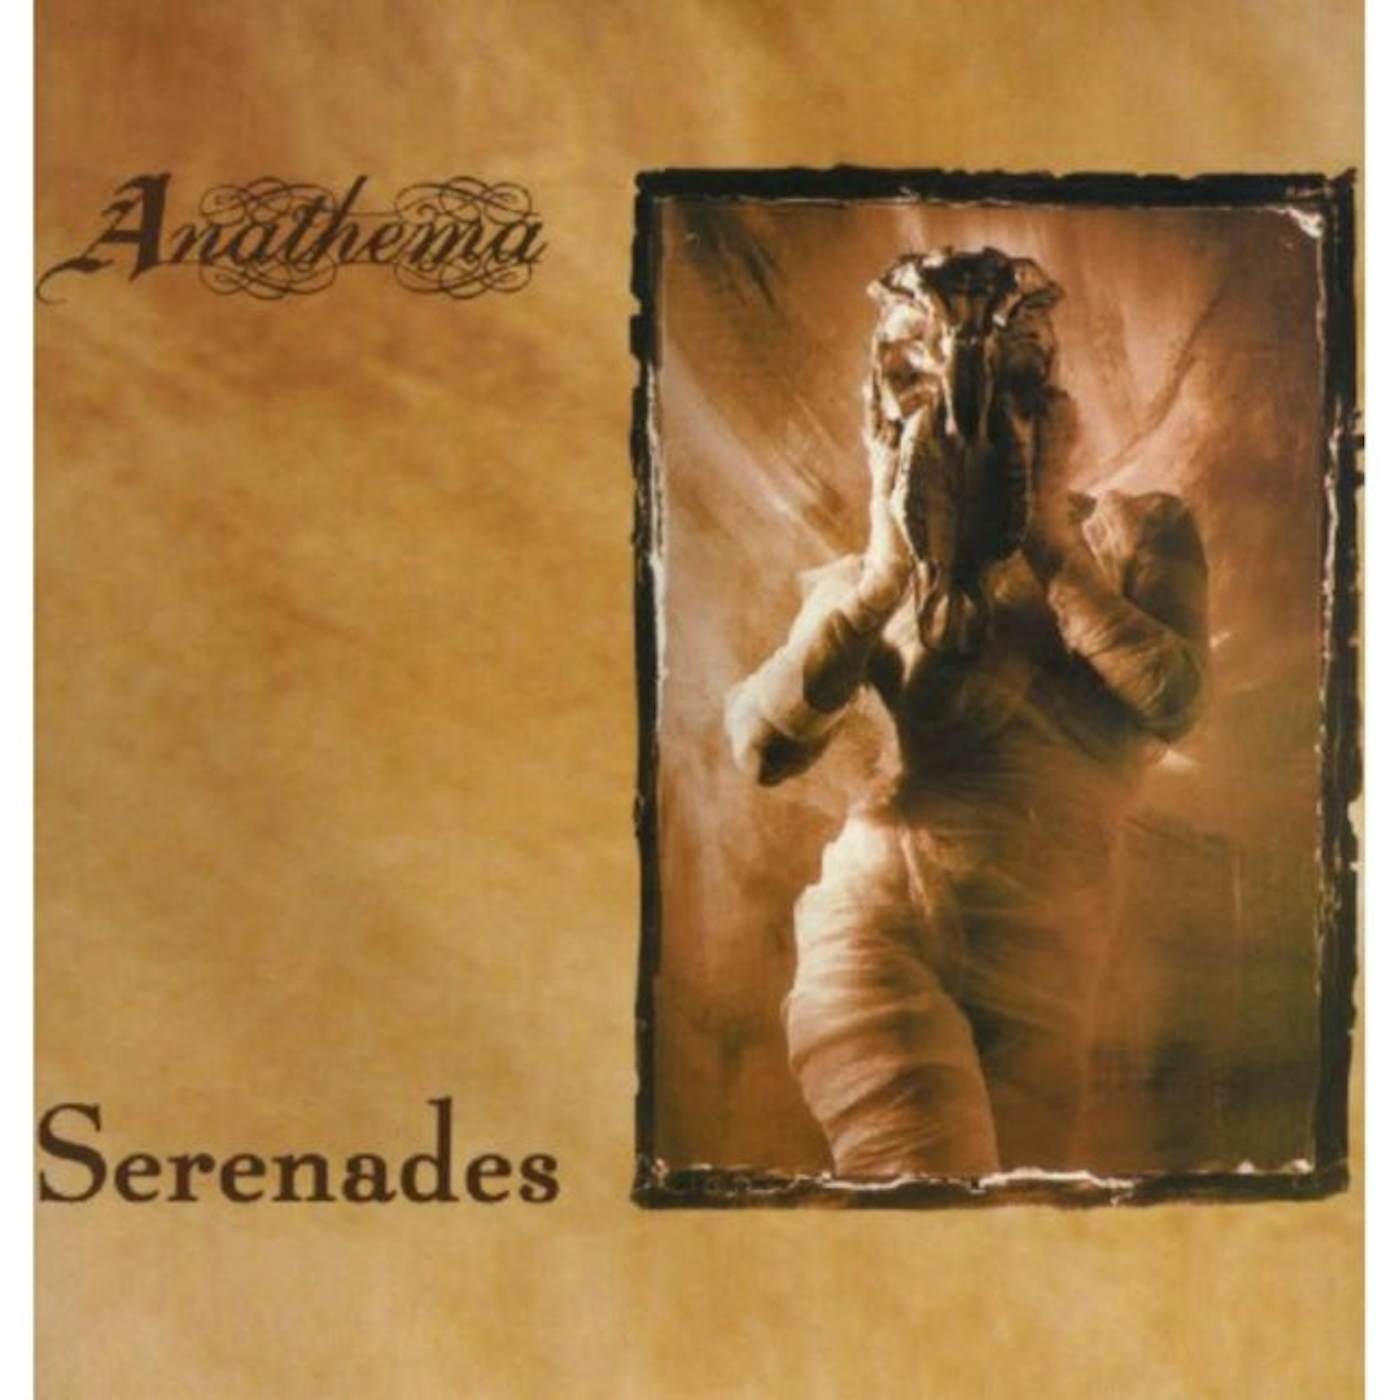 Anathema LP - Serenades (Vinyl)